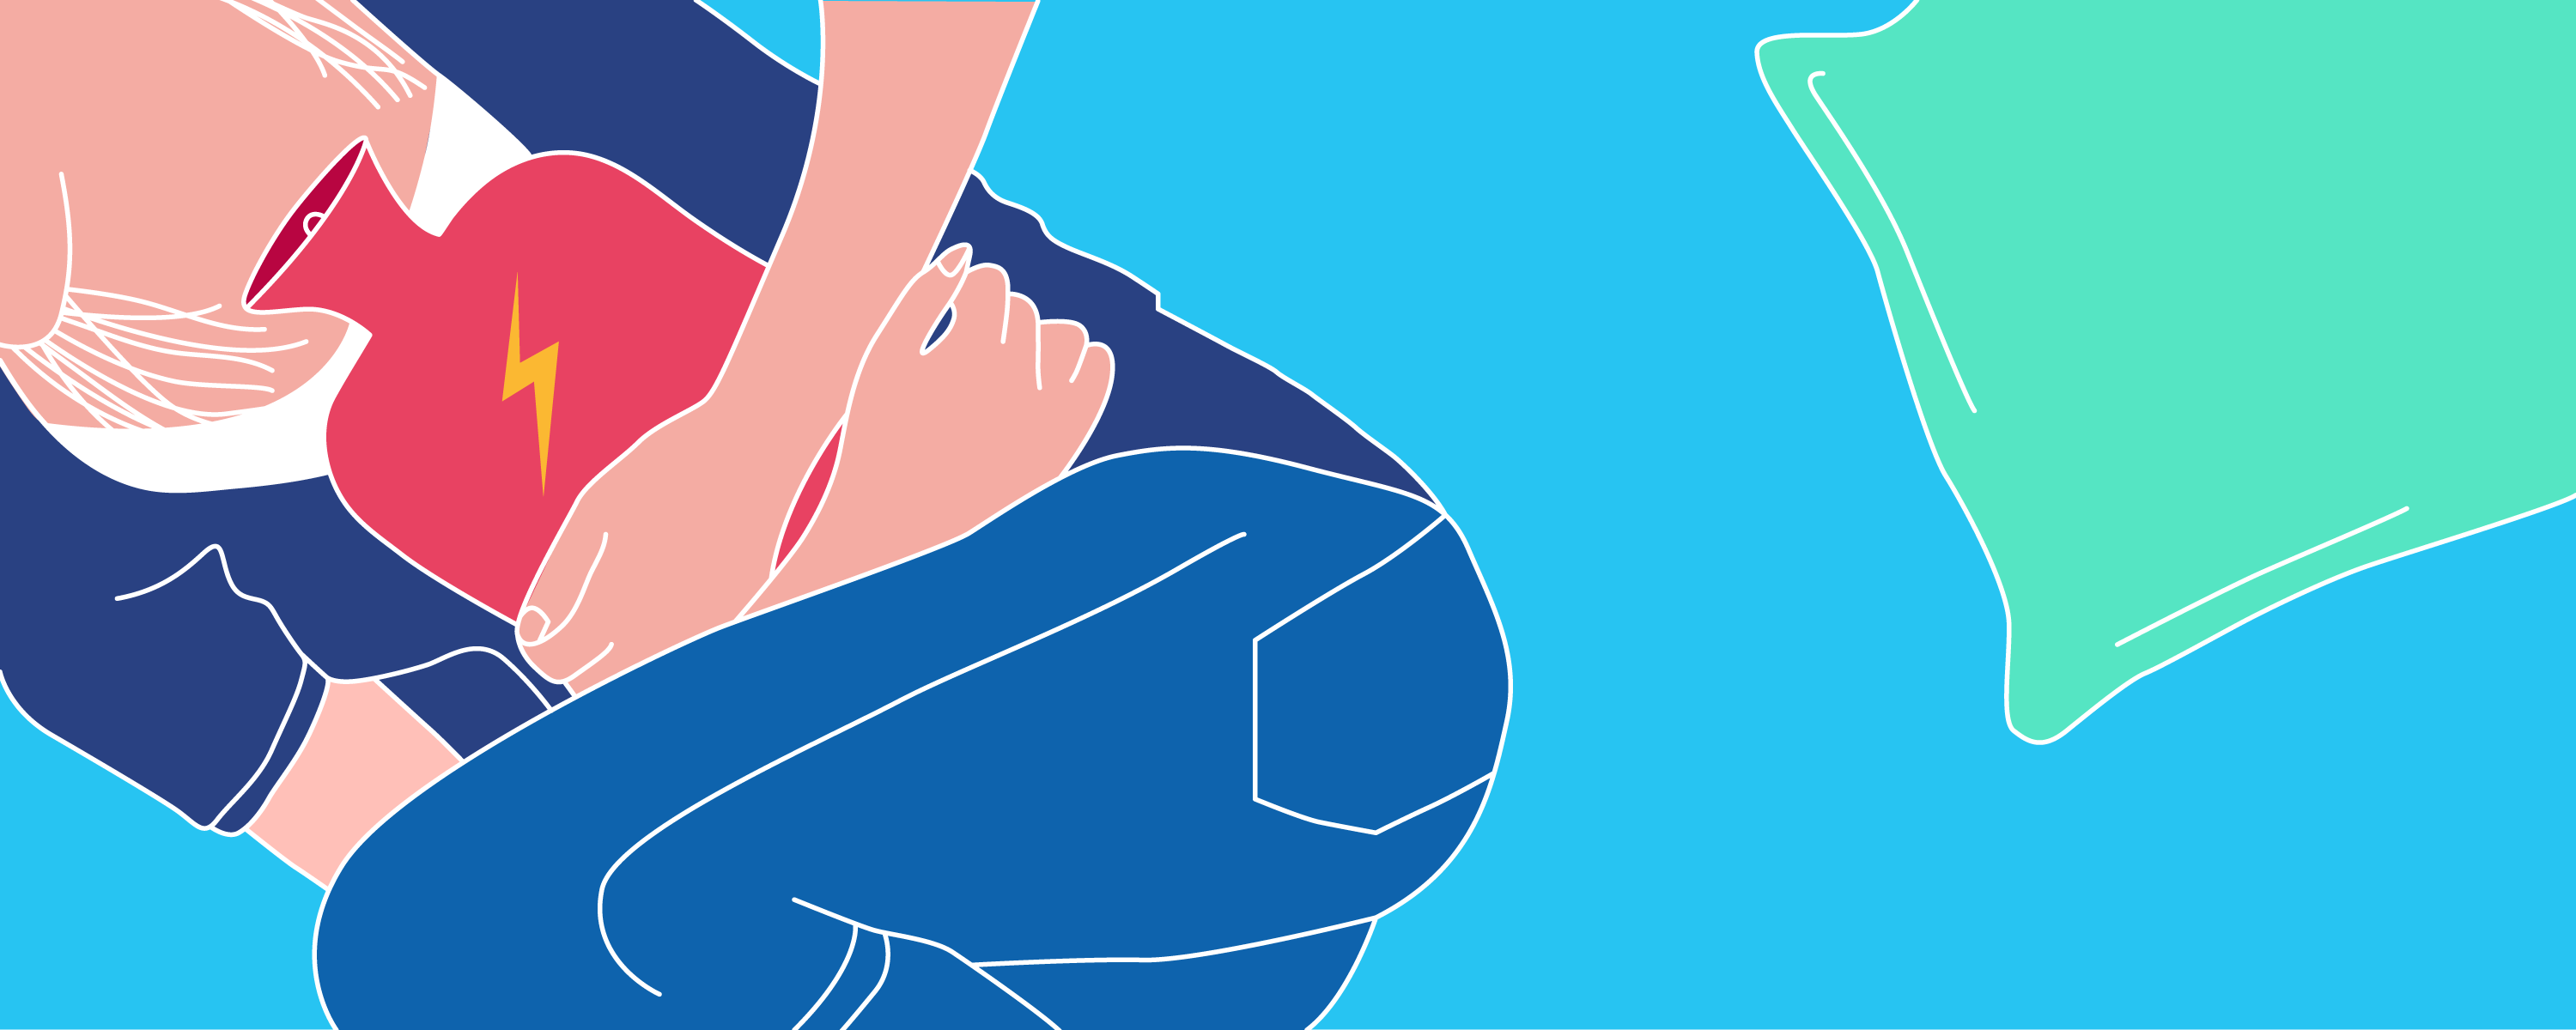 Durerile lombare cauzate de menstruatie